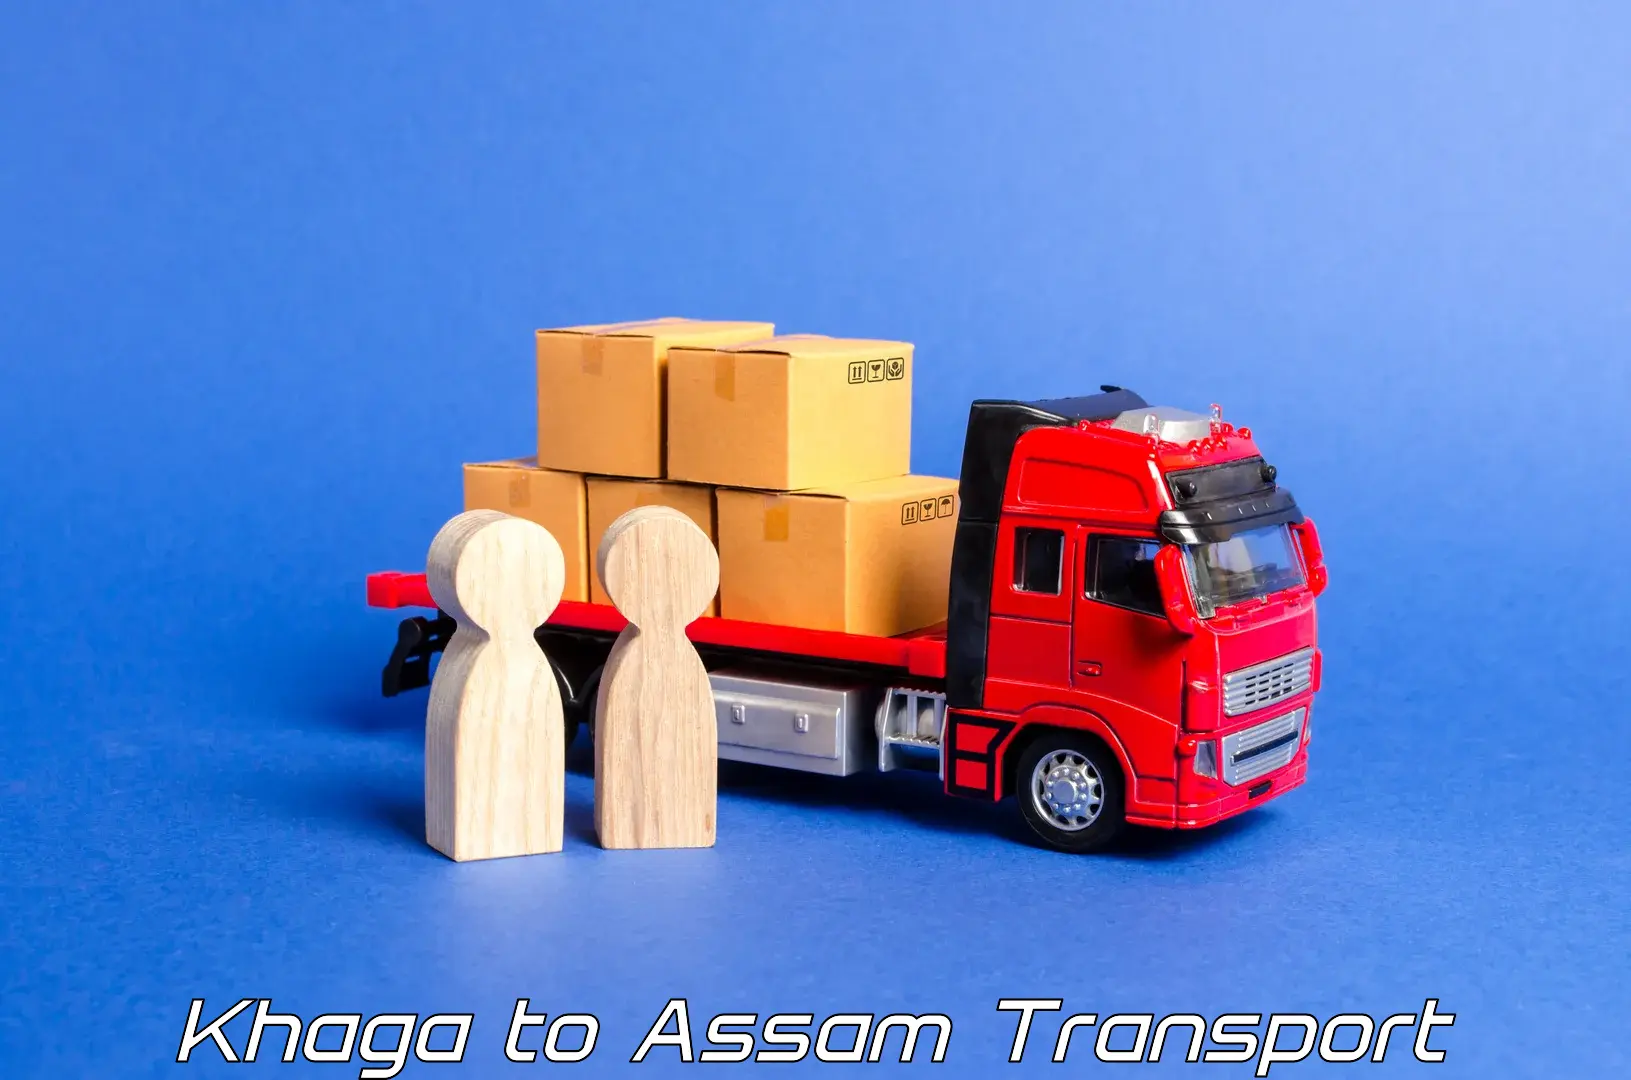 Vehicle transport services Khaga to Dalgaon